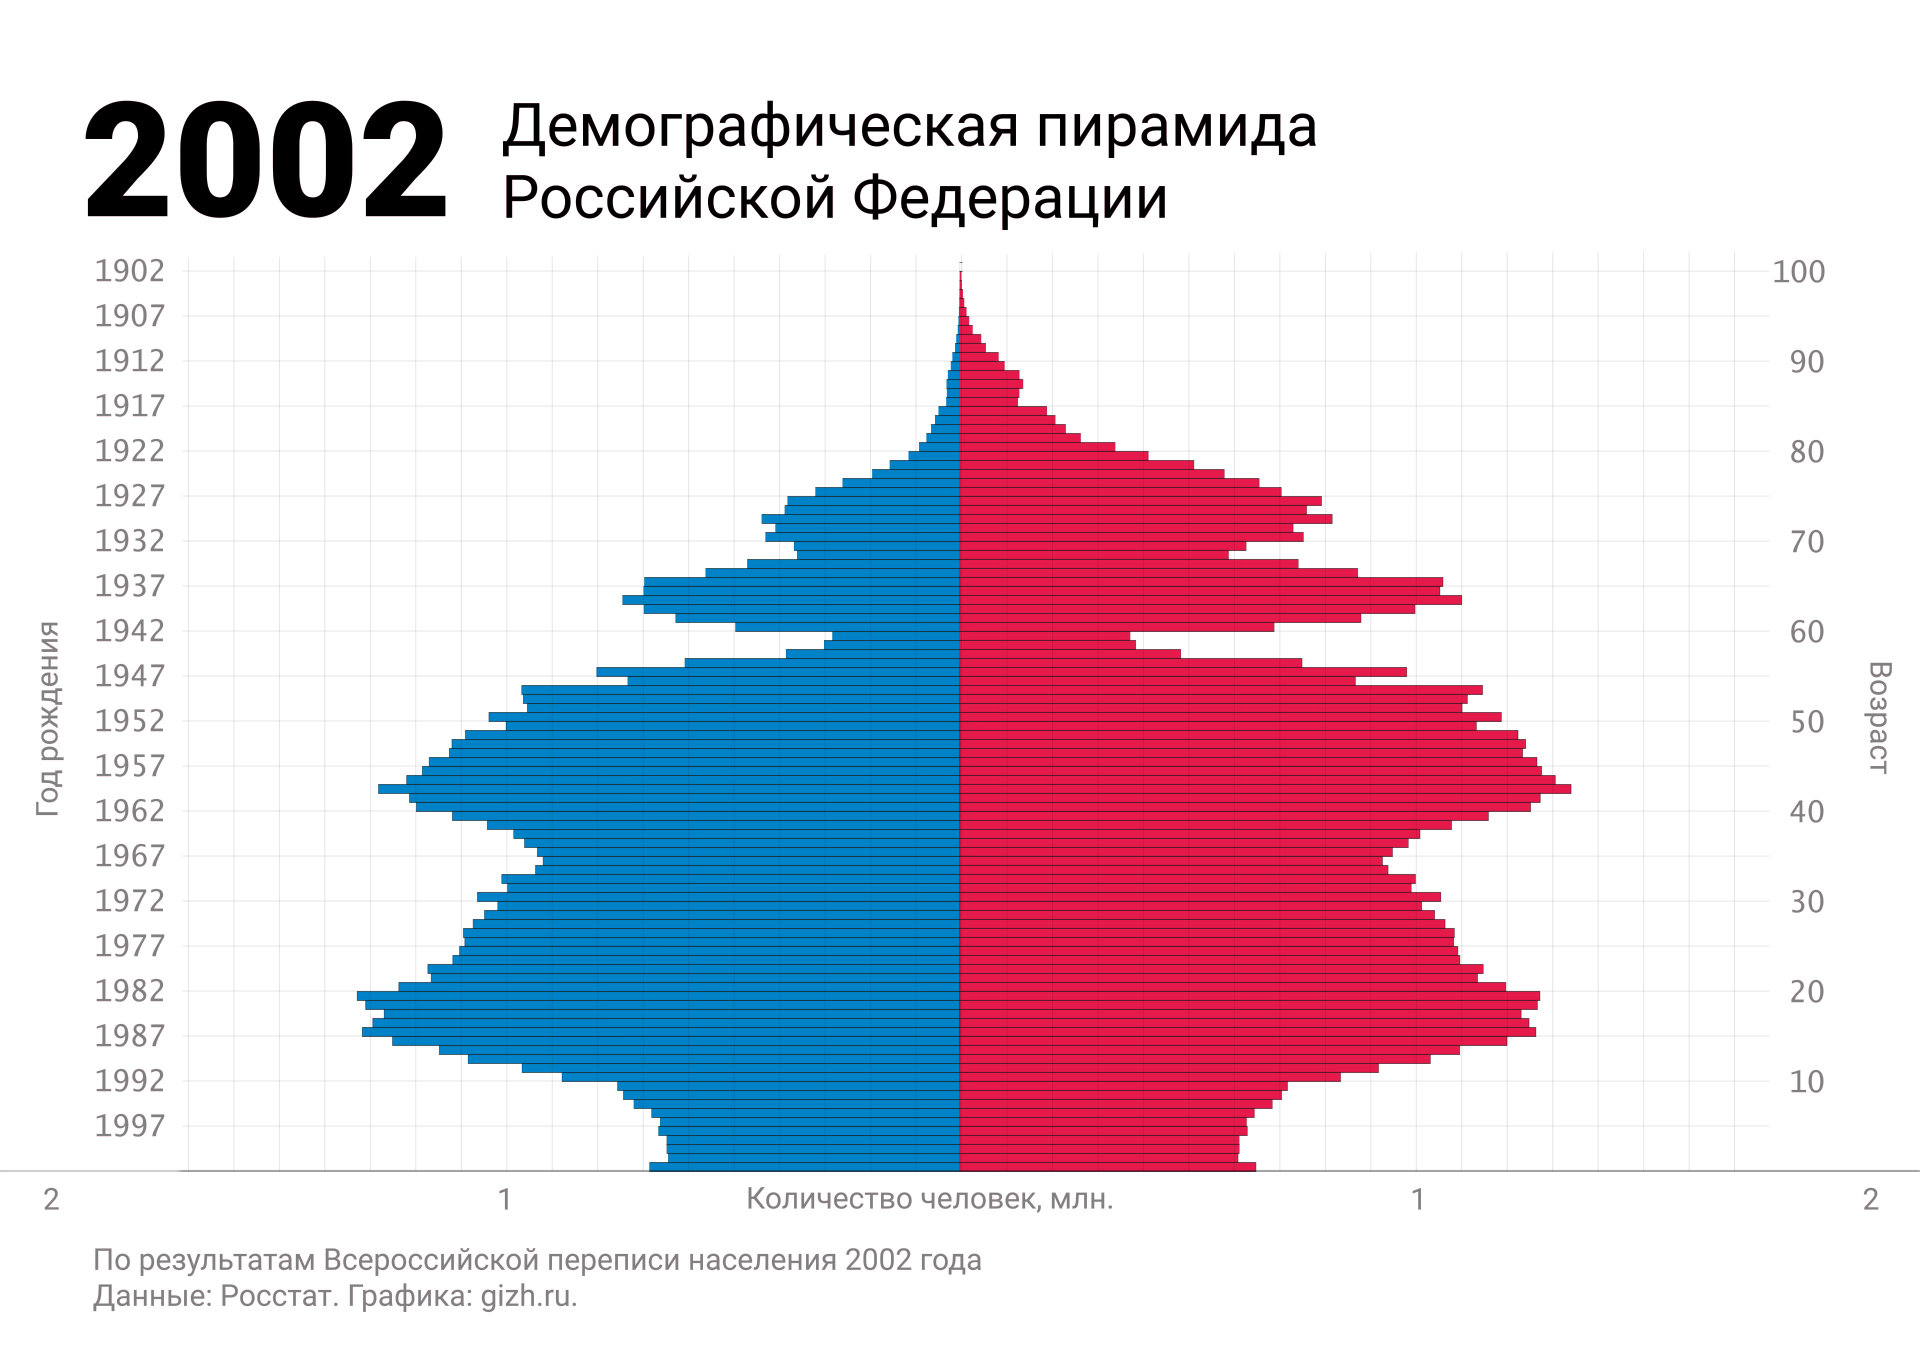 Демографическая (половозрастная) пирамида России по переписи 2002